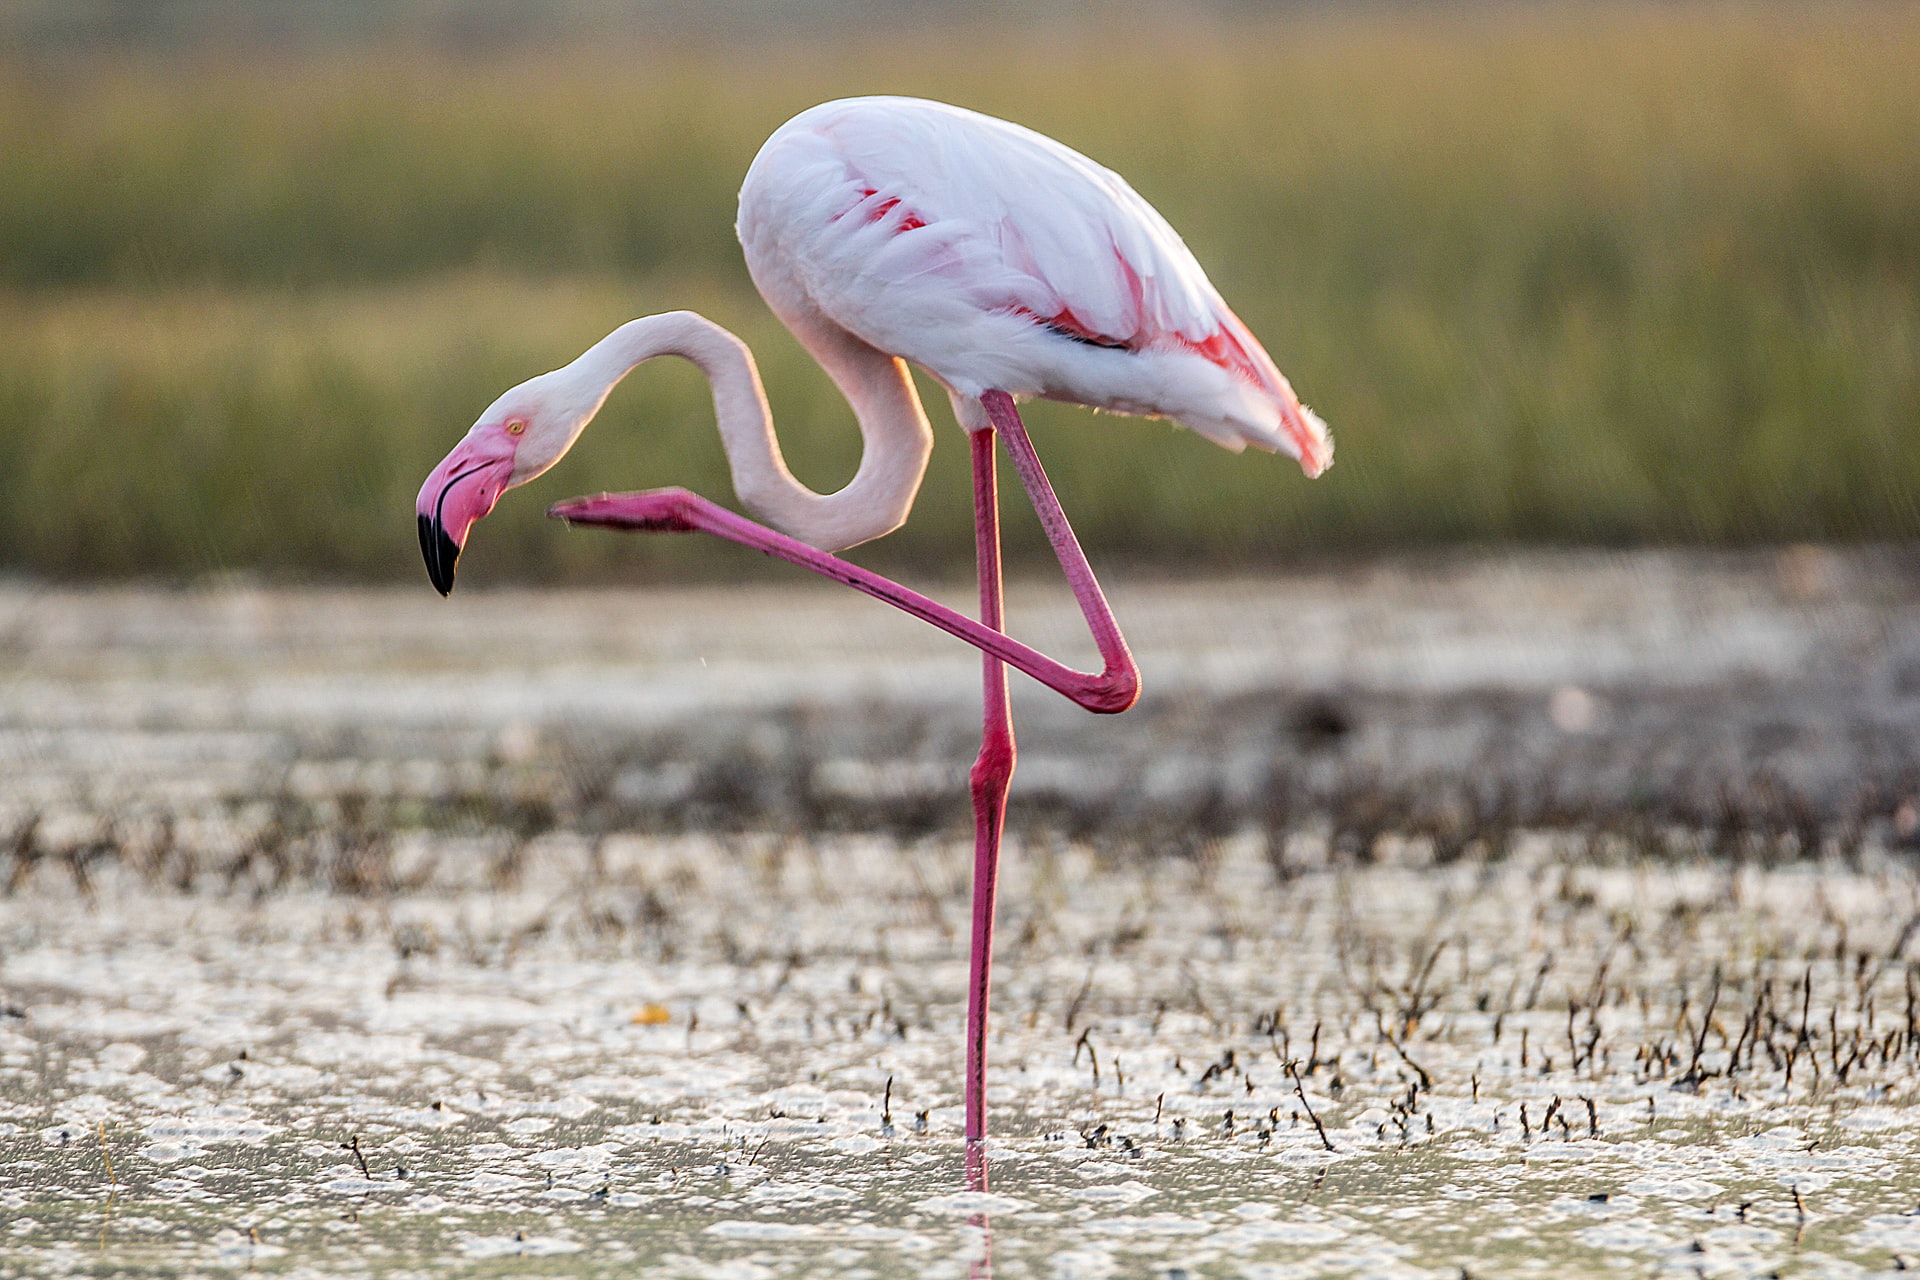 Florida Man June 26-Death by Flamingo